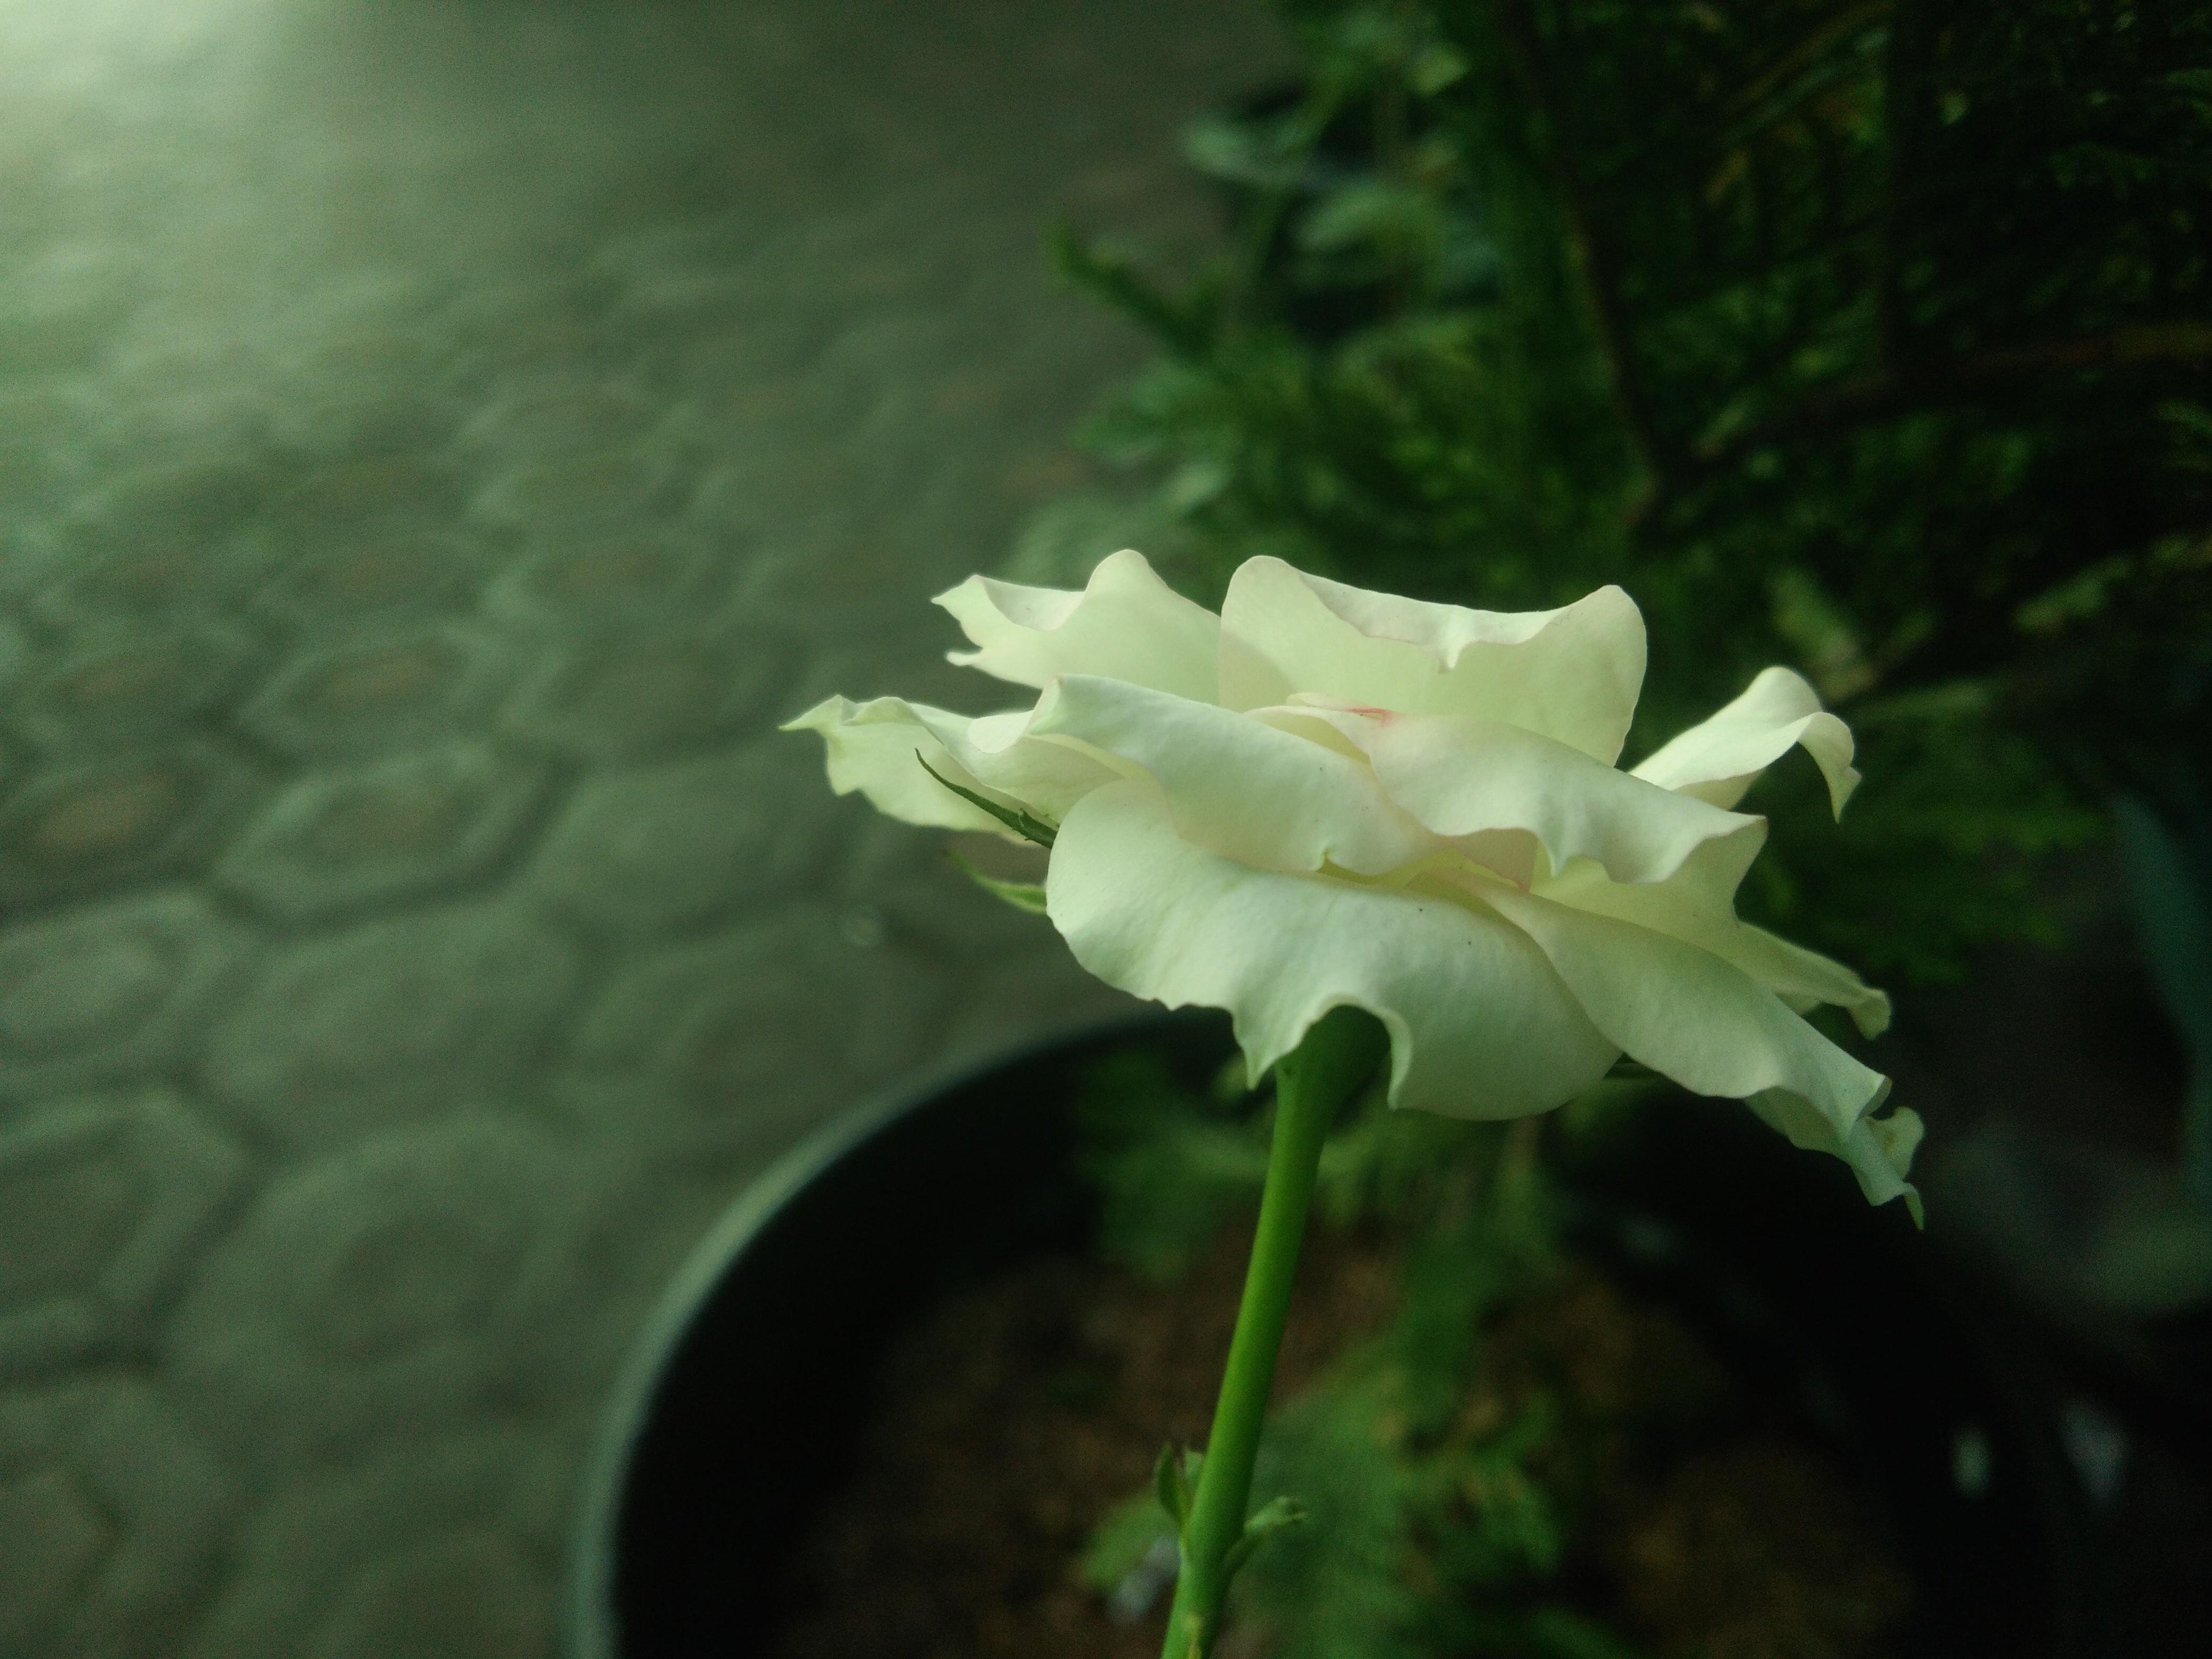  Bunga  mawar  putih  Steemkr